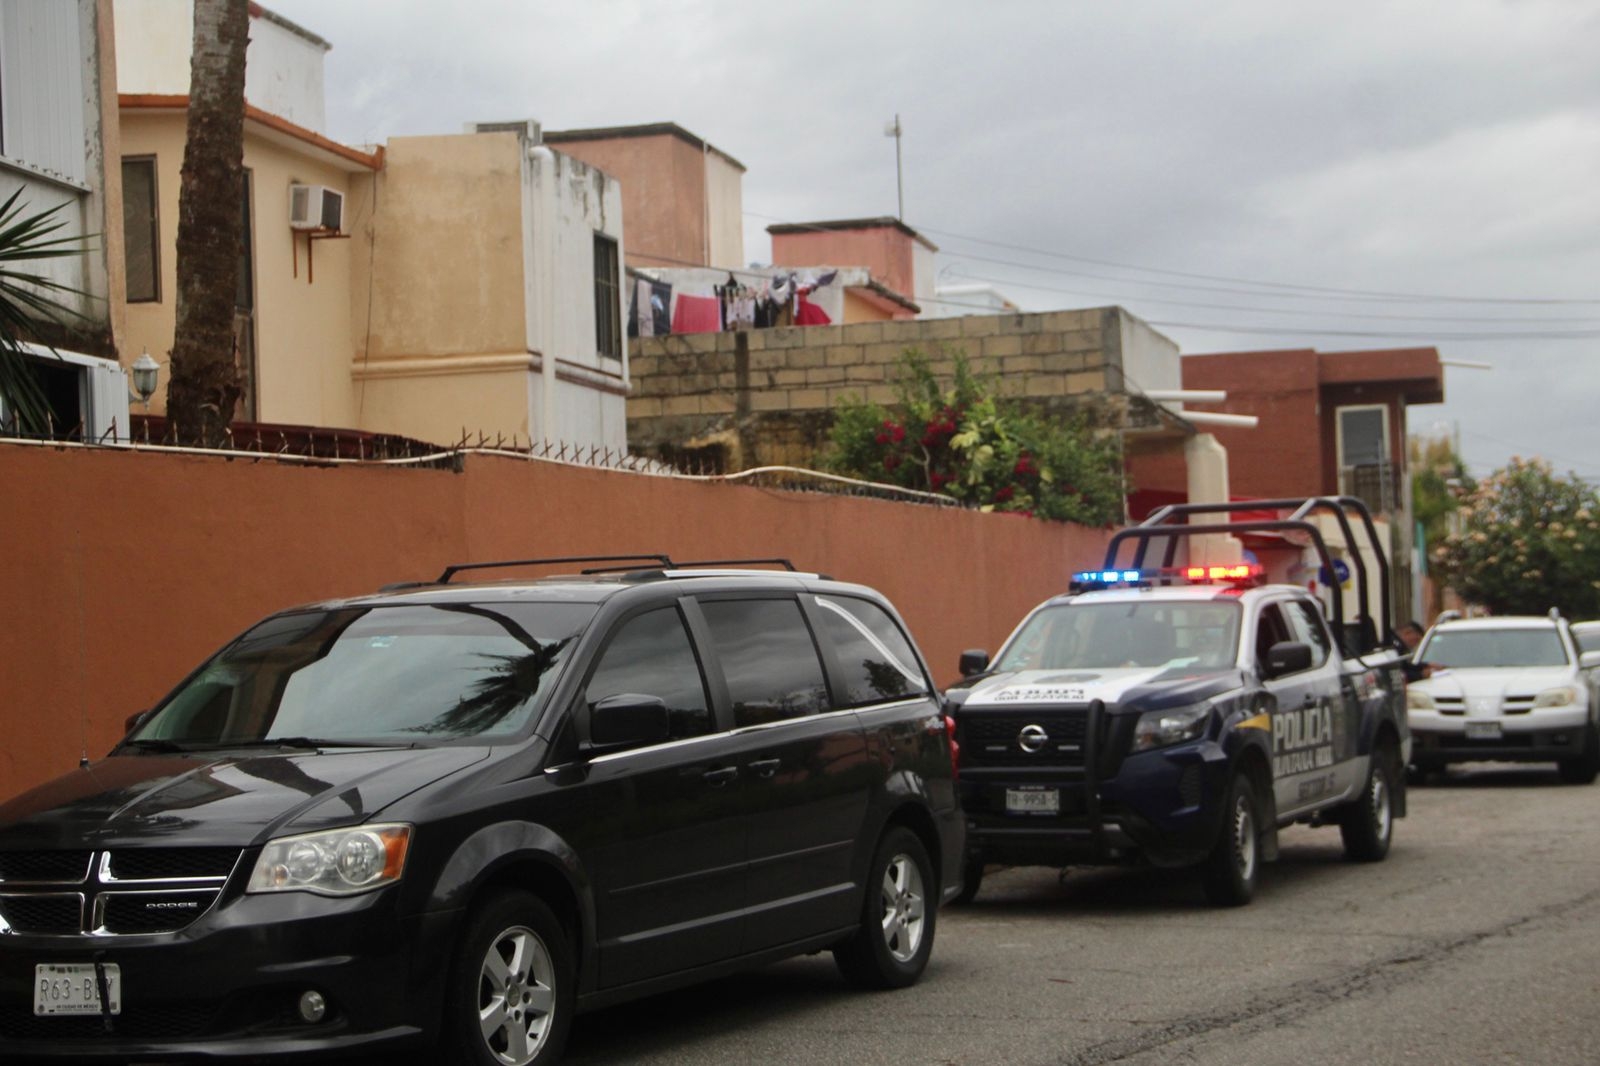 Luego de confirmar la muerte del hombre, los oficiales dieron aviso a Servicios Periciales de la FGE Quintana Roo en Cancún